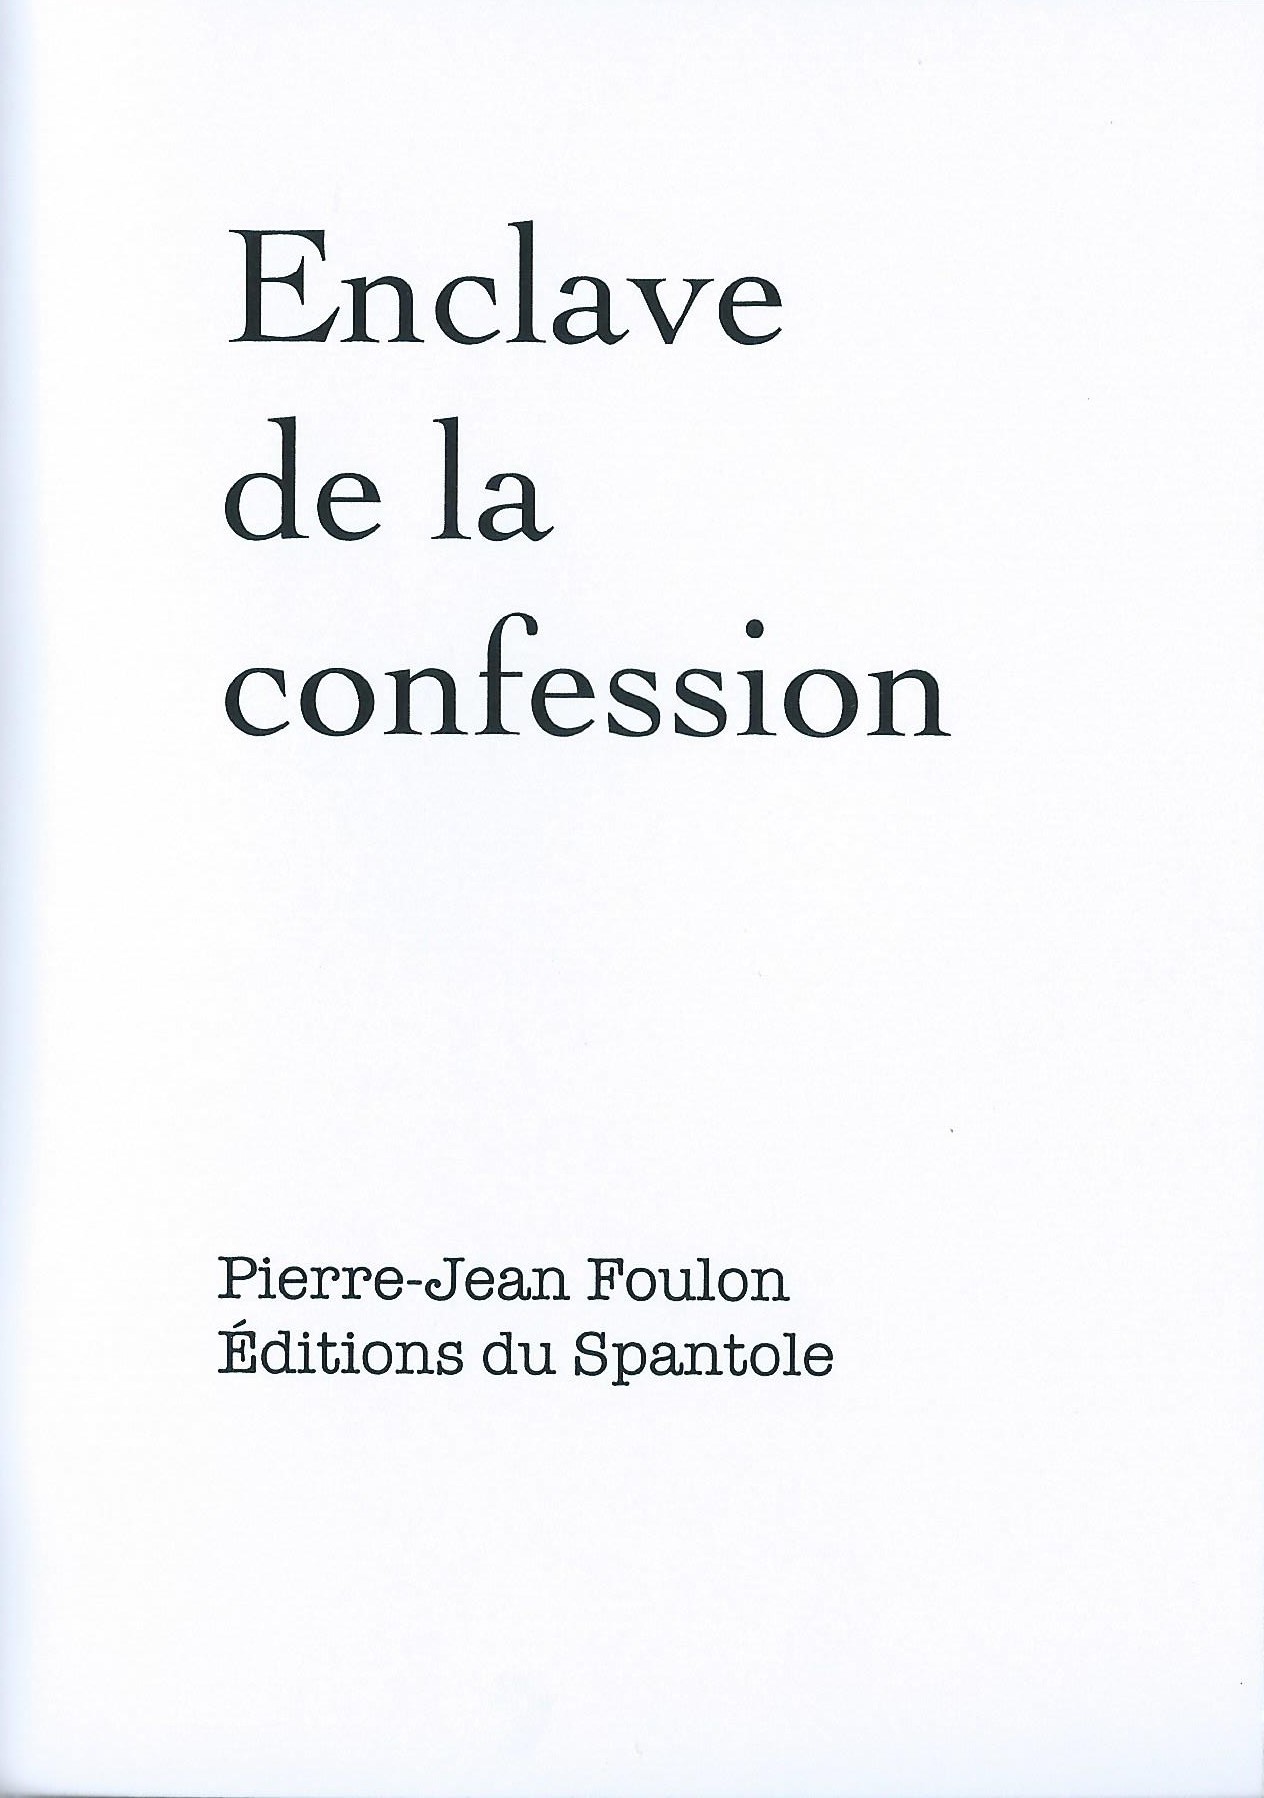 PIERRE-JEAN FOULON - Enclave de la confession